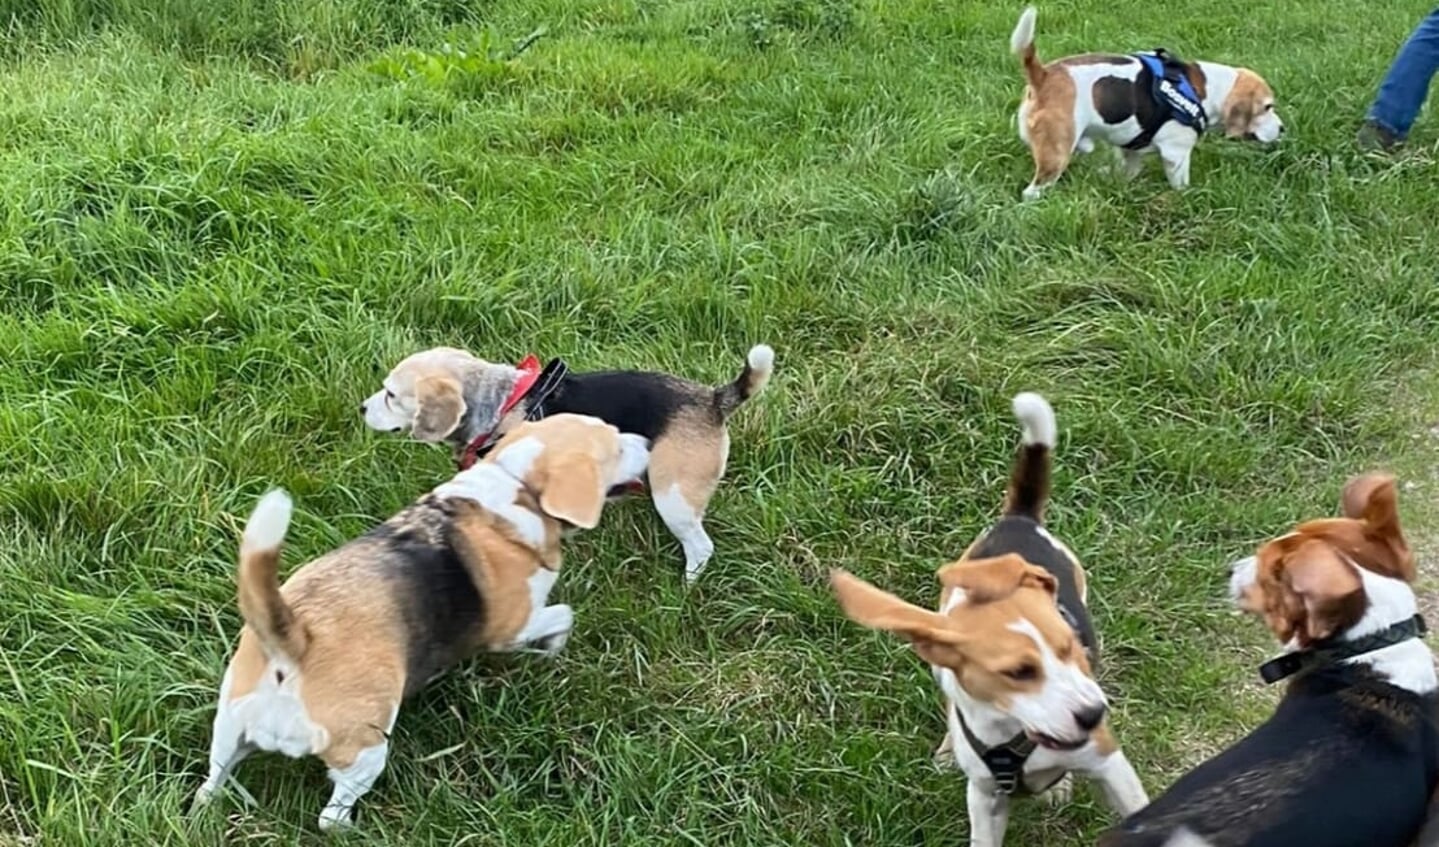 De deelnemende beagles hadden het grootste plezier!